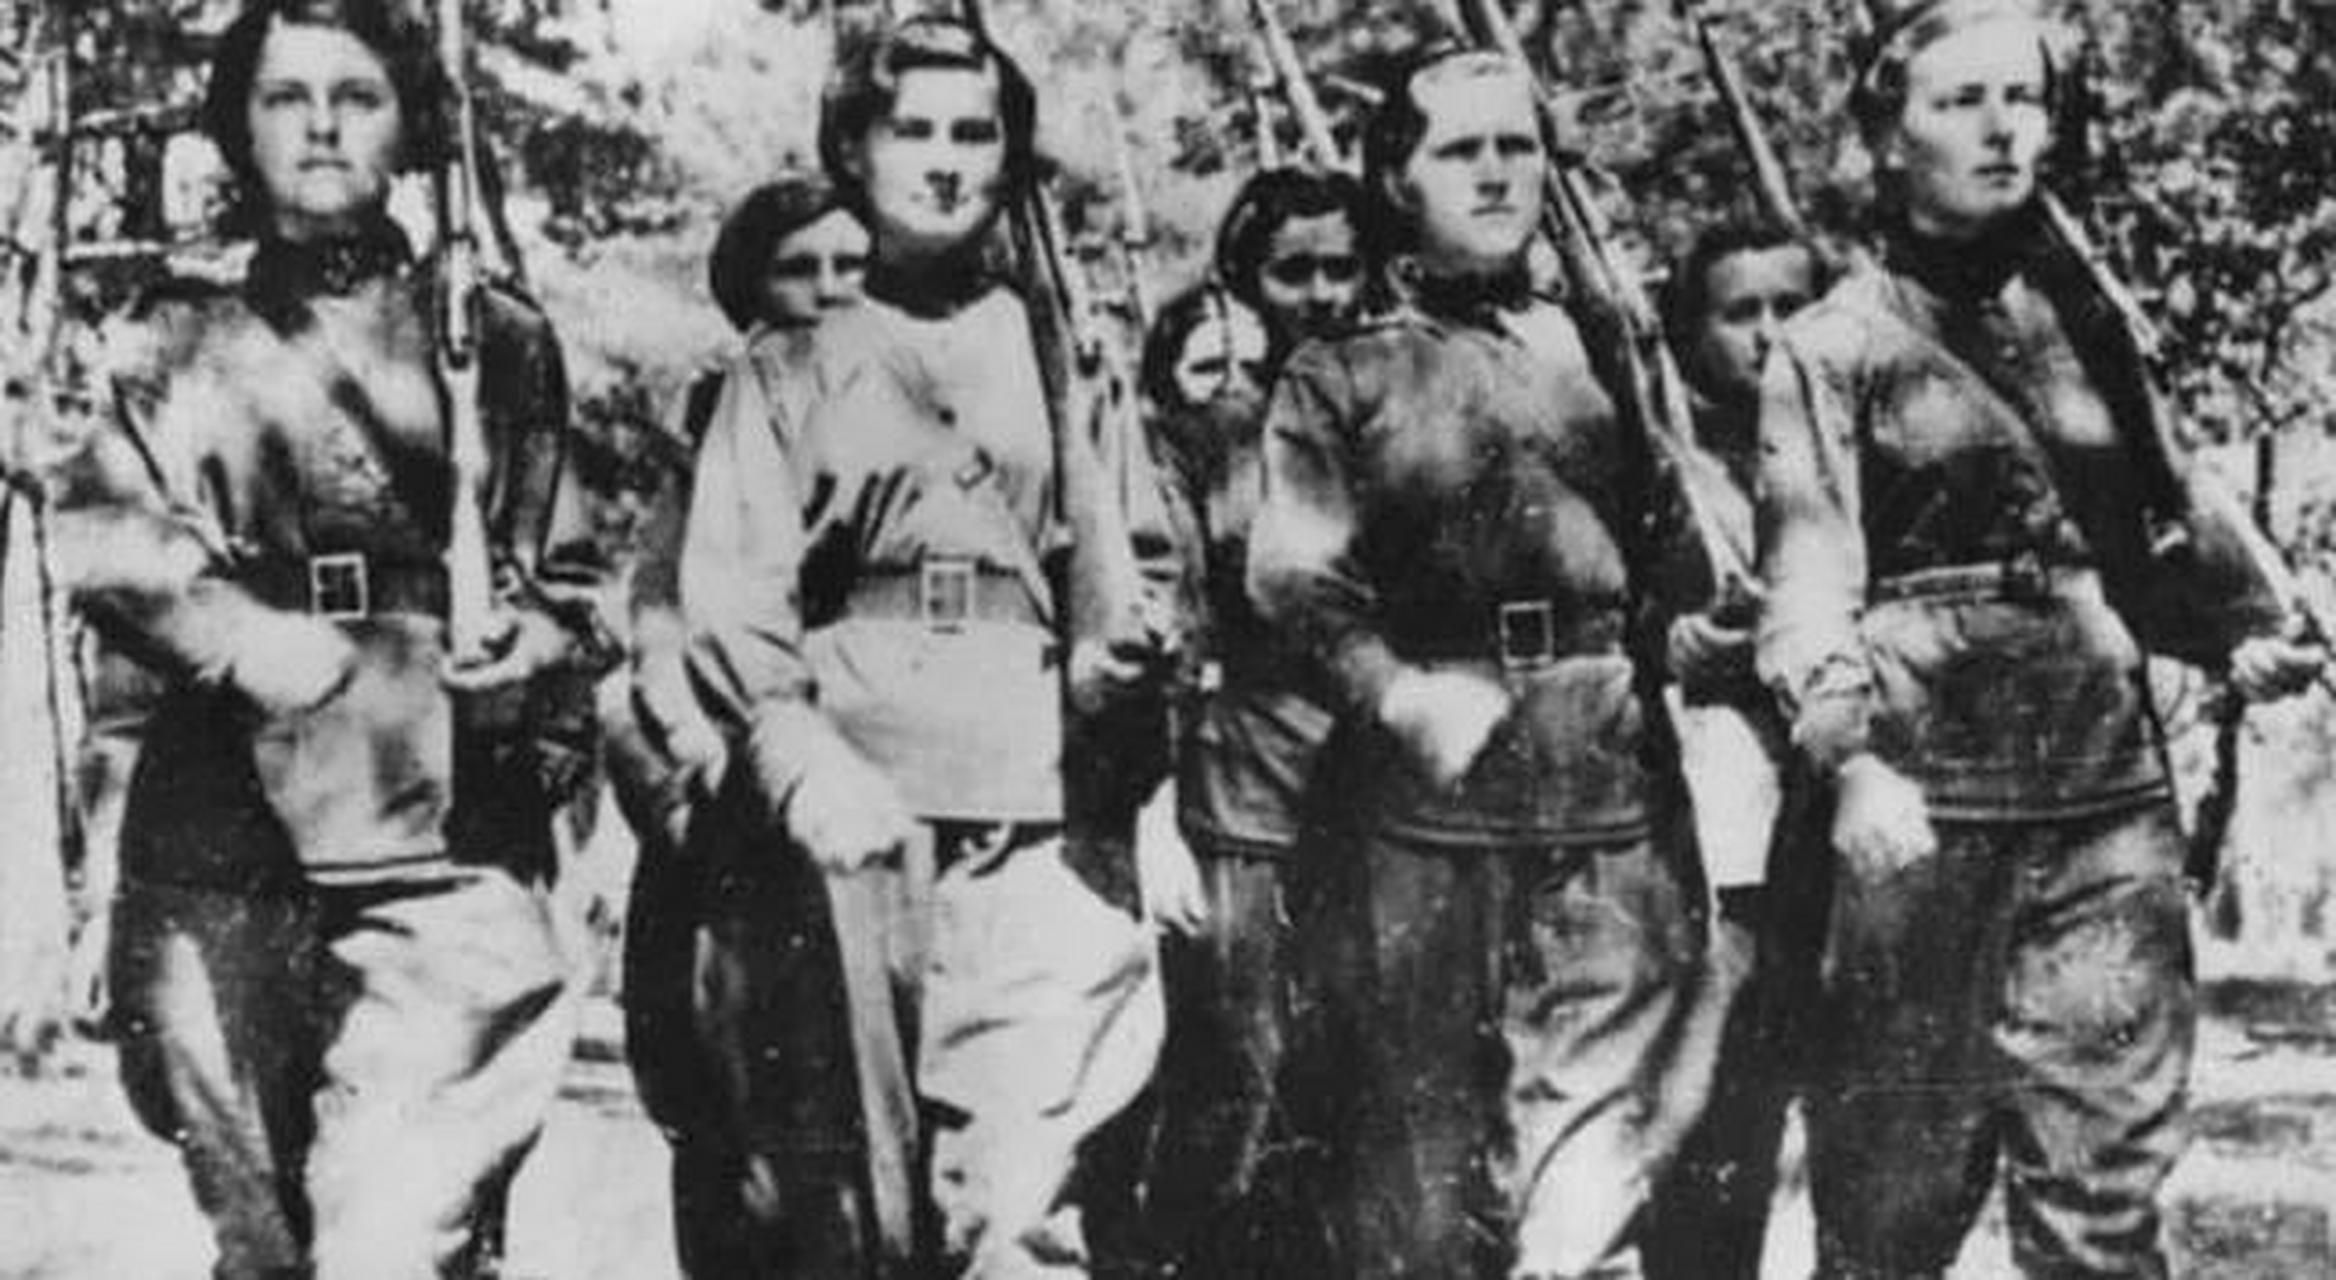 1941年,一名苏联女兵被德军脱光衣服轮番侵犯,最后惨死